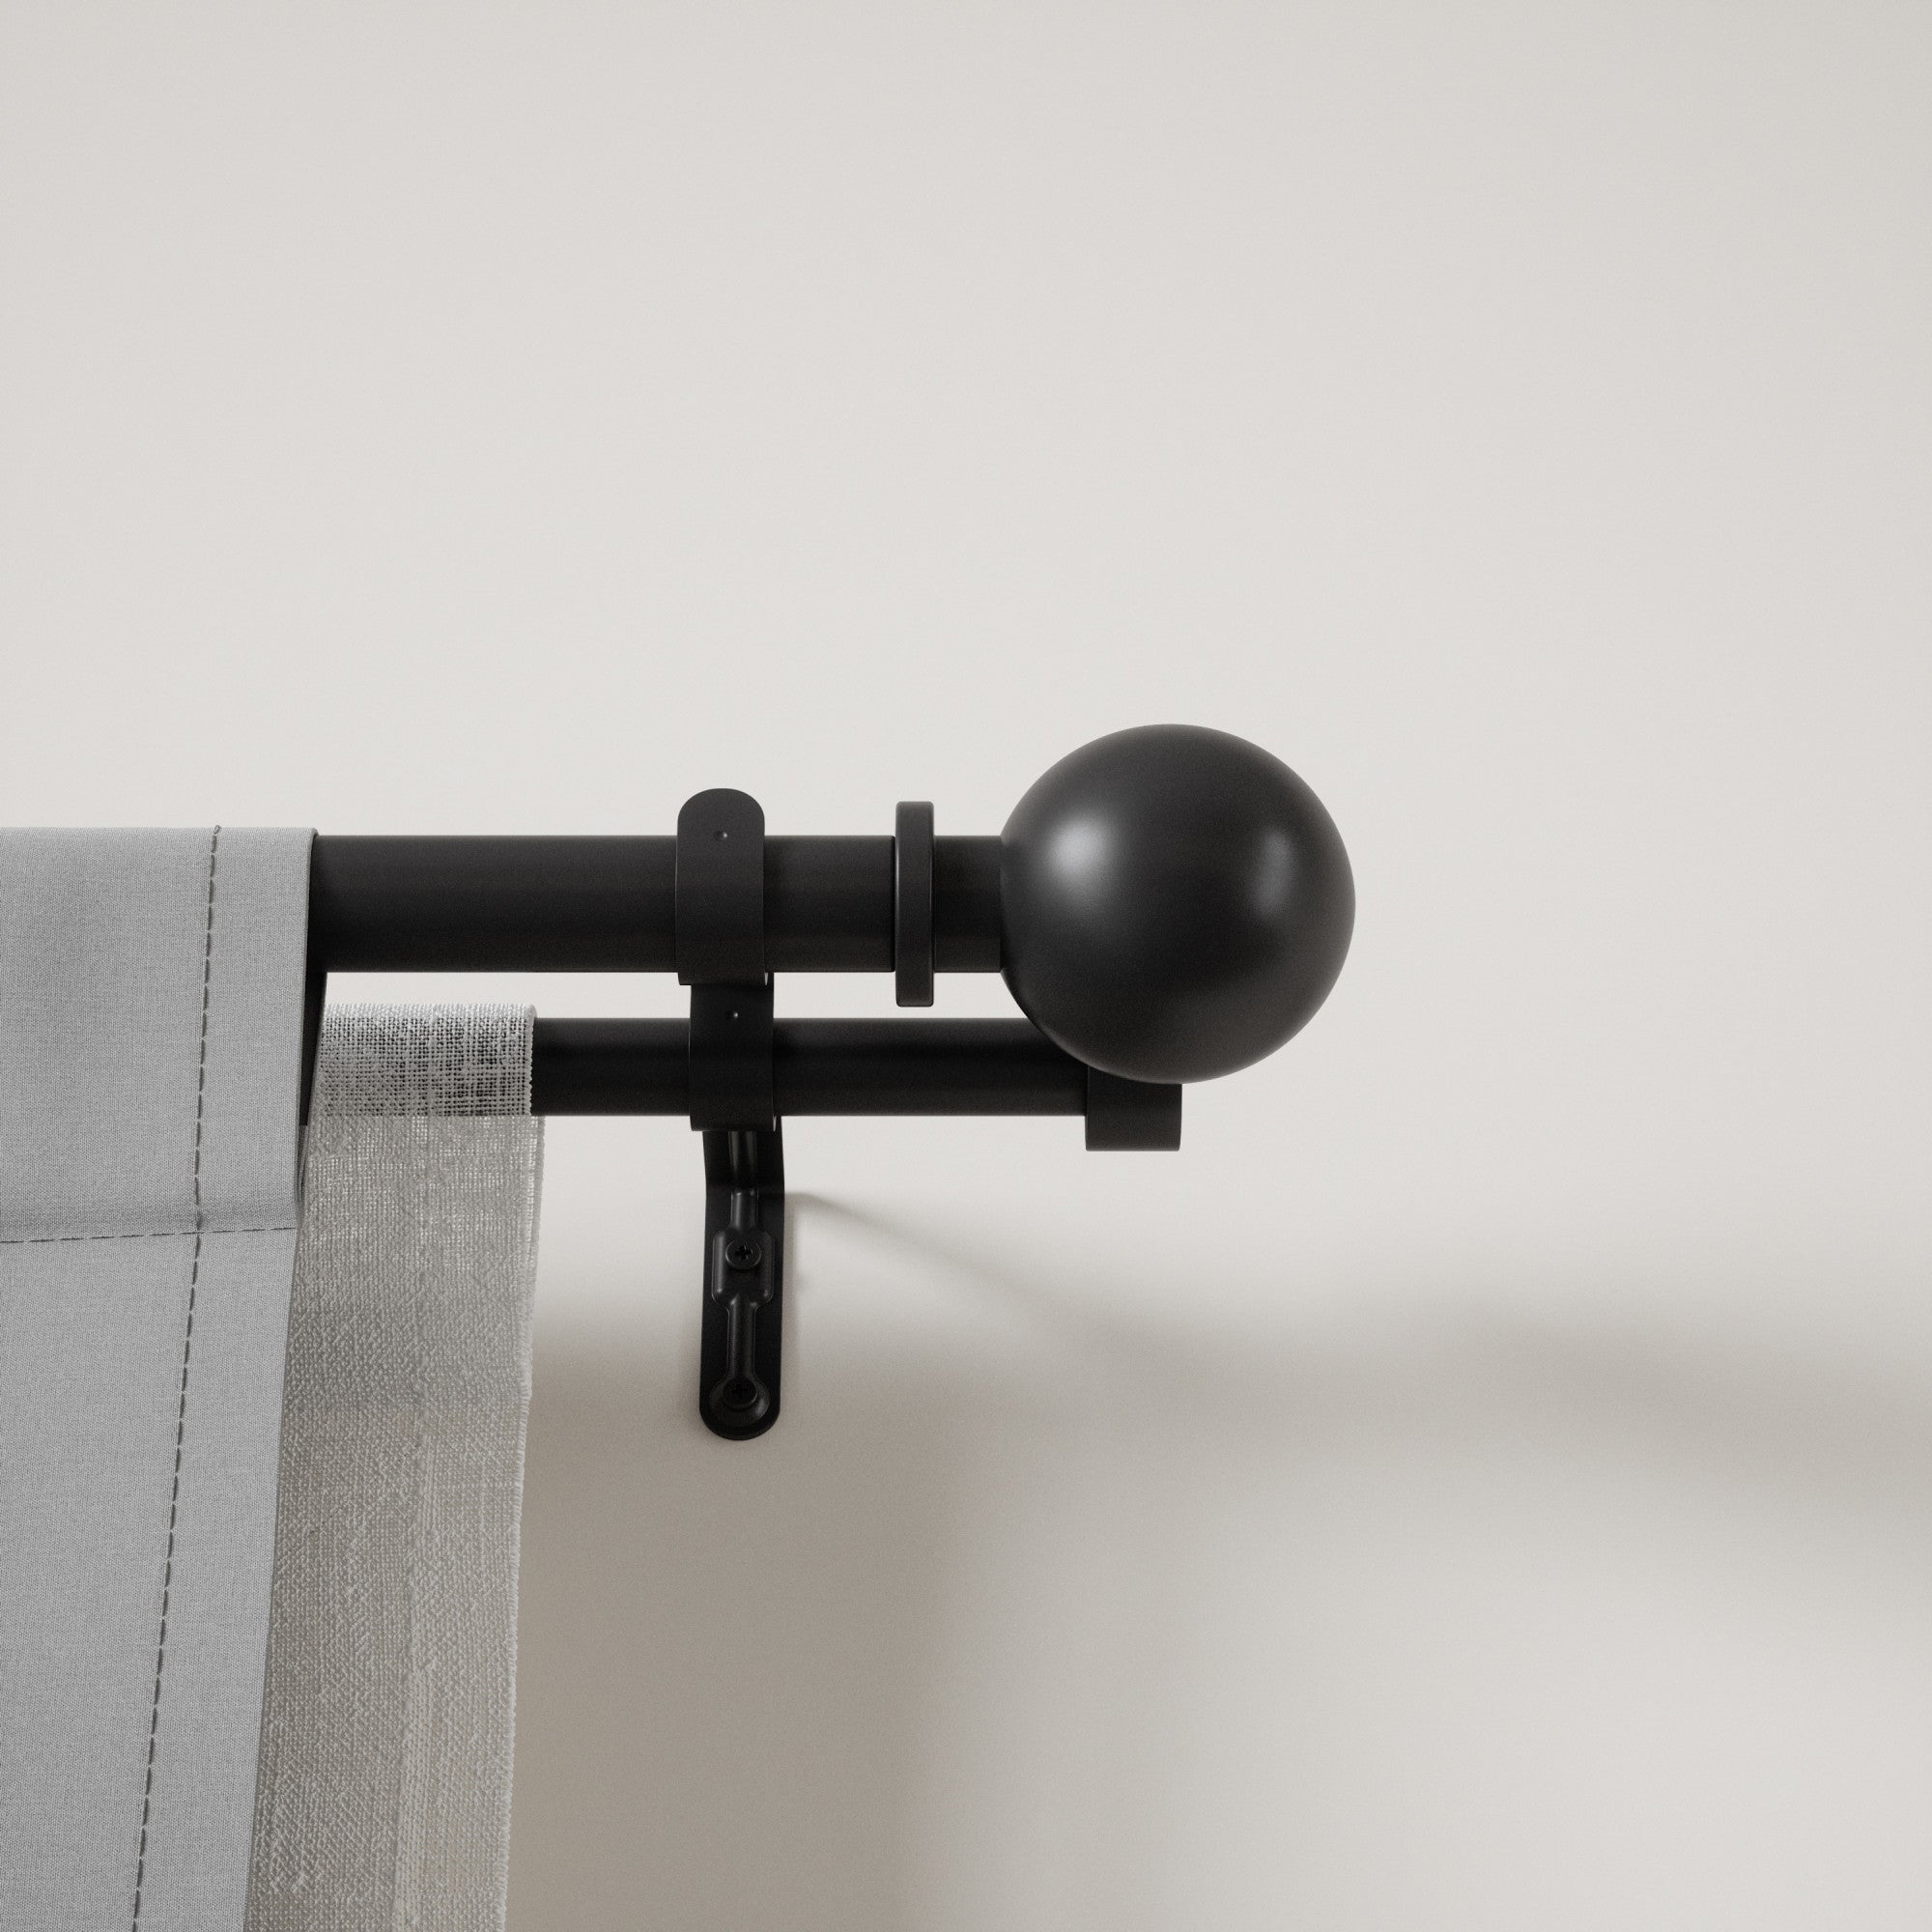 Double Curtain Rods | color: Matte-Black | size: 36-72"""" (91-183 cm) | diameter: 1"""" (2.5 cm)